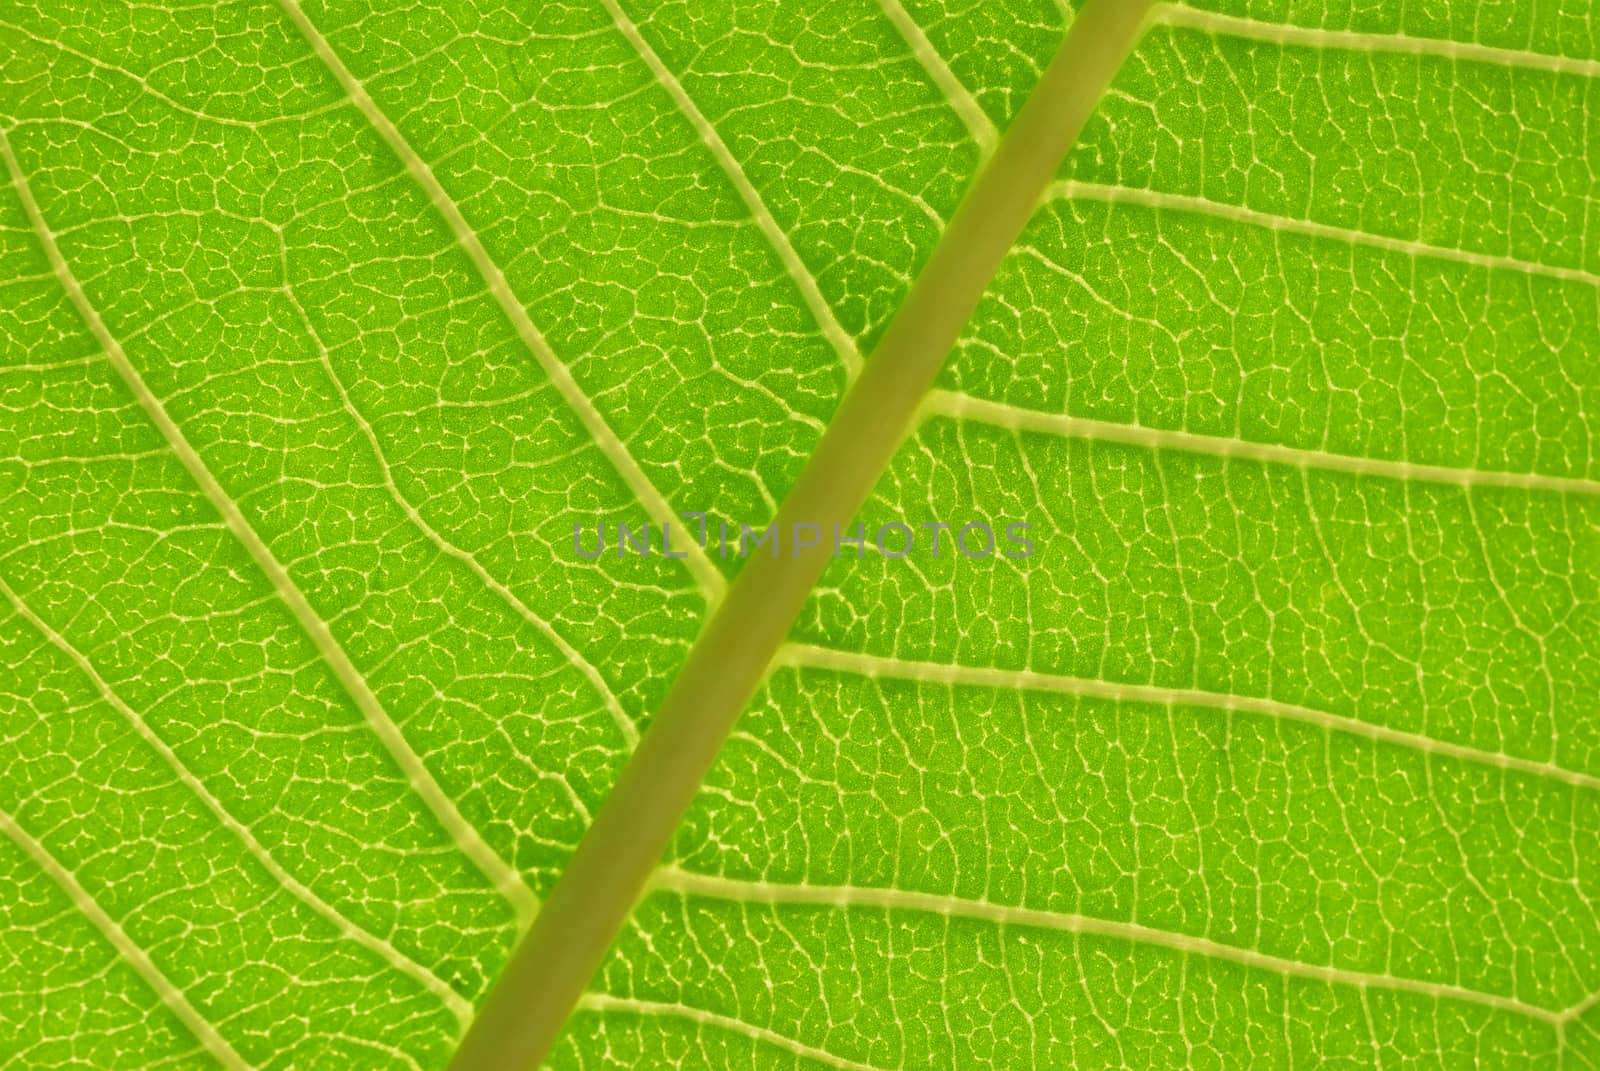 Leaf Veins by whitechild